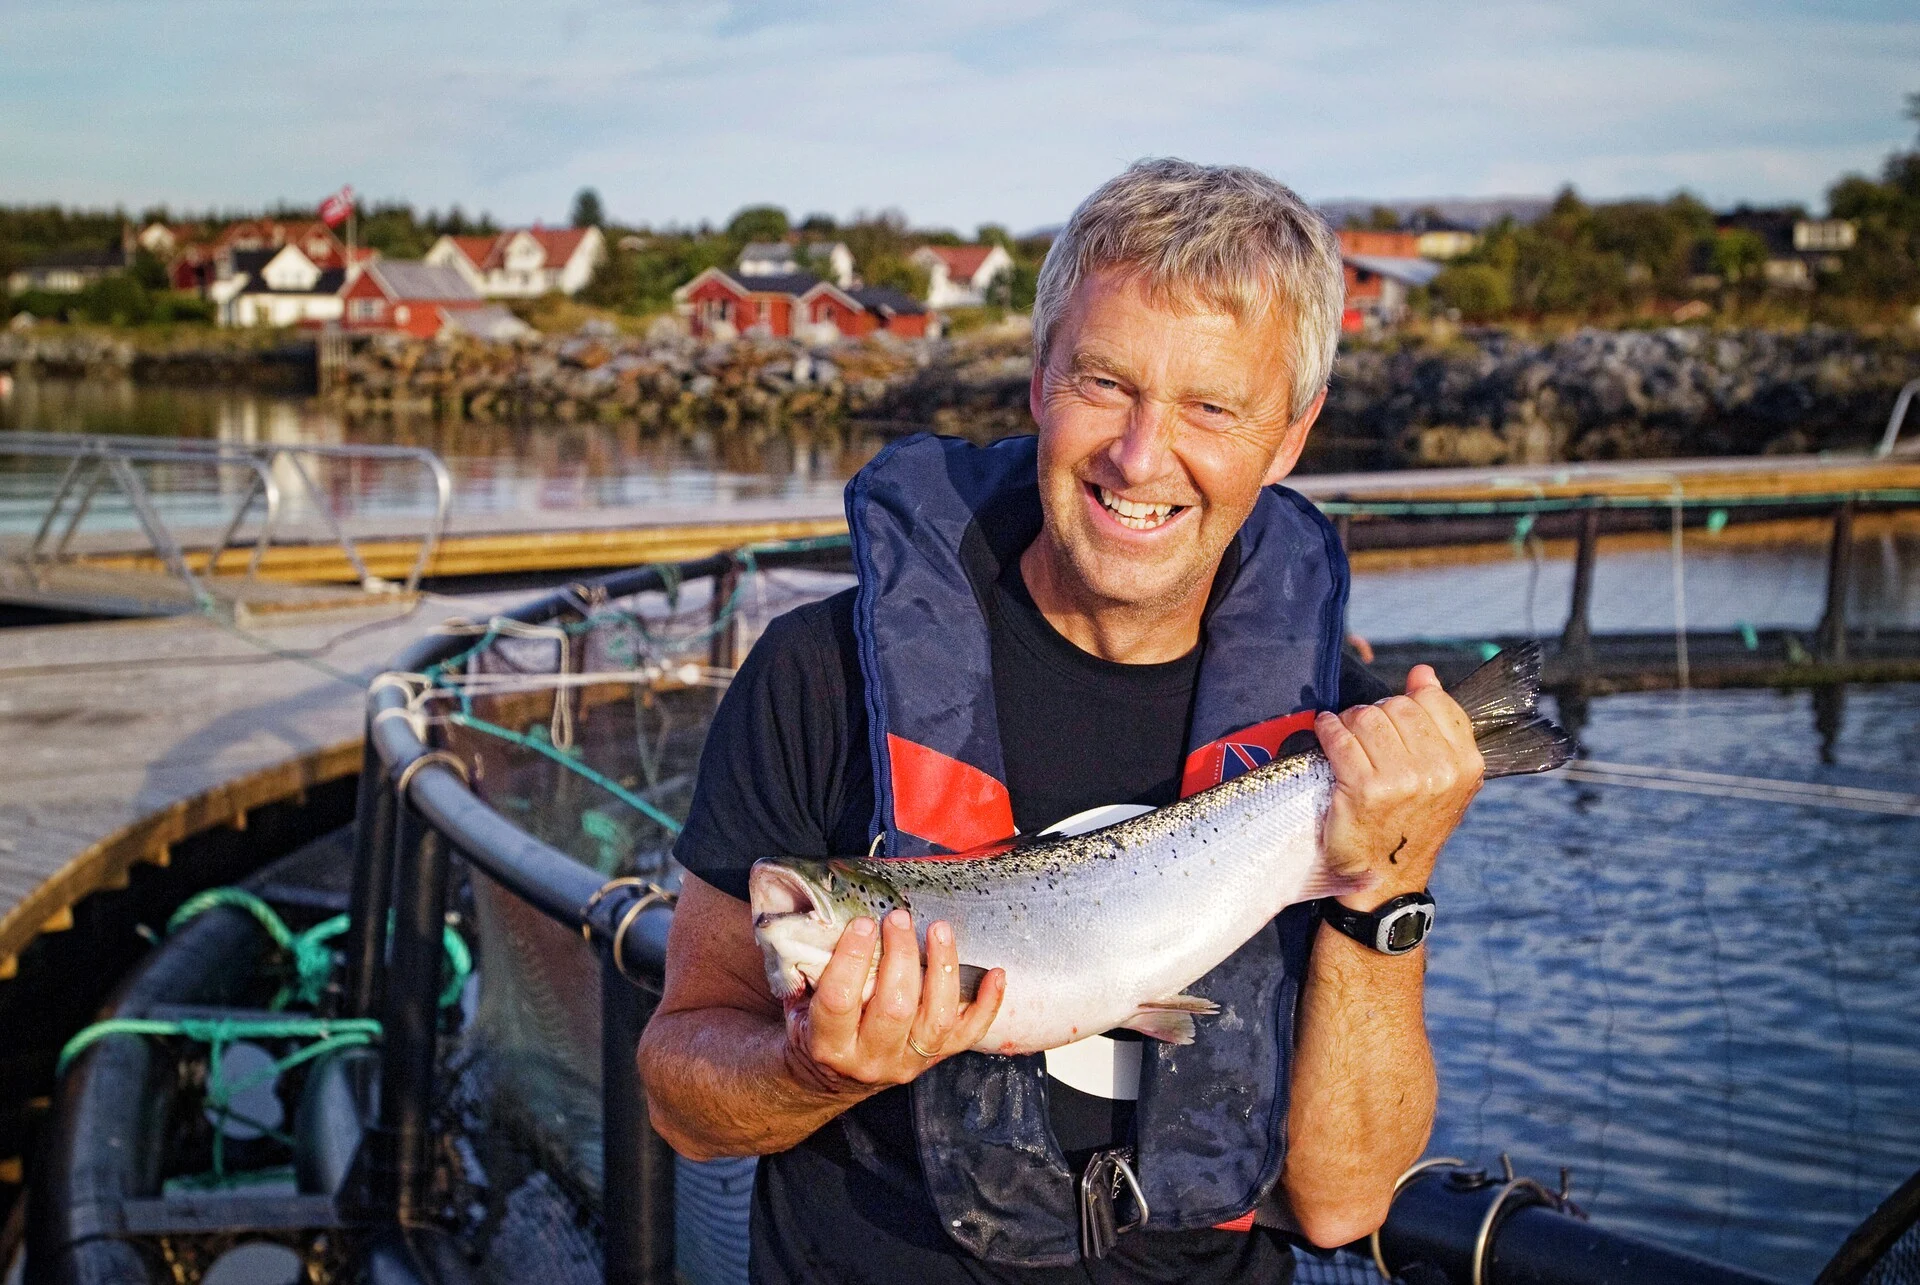 Un homme tient un saumon qu'il vient d'attraper lors d'une sortie de pêche.